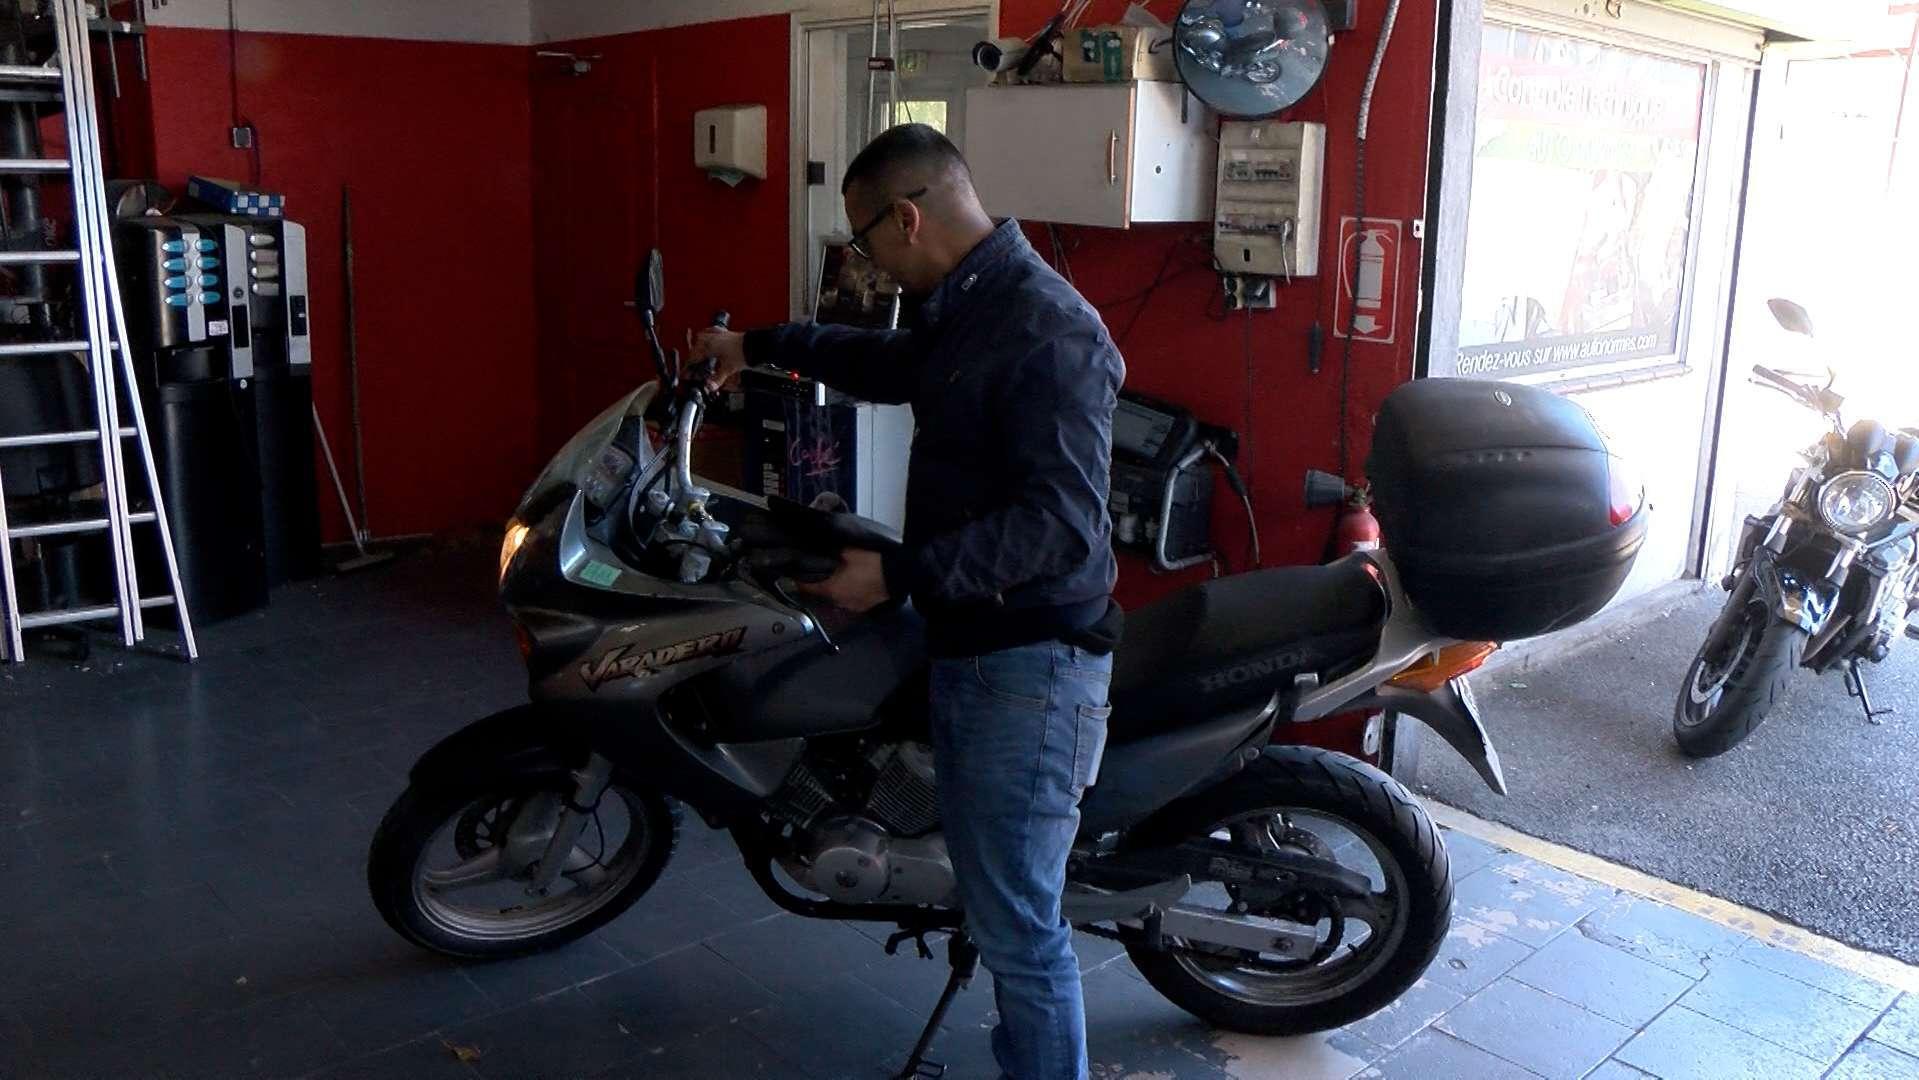 Contrôle technique des motos : la réaction des motards et comment se passe une visite